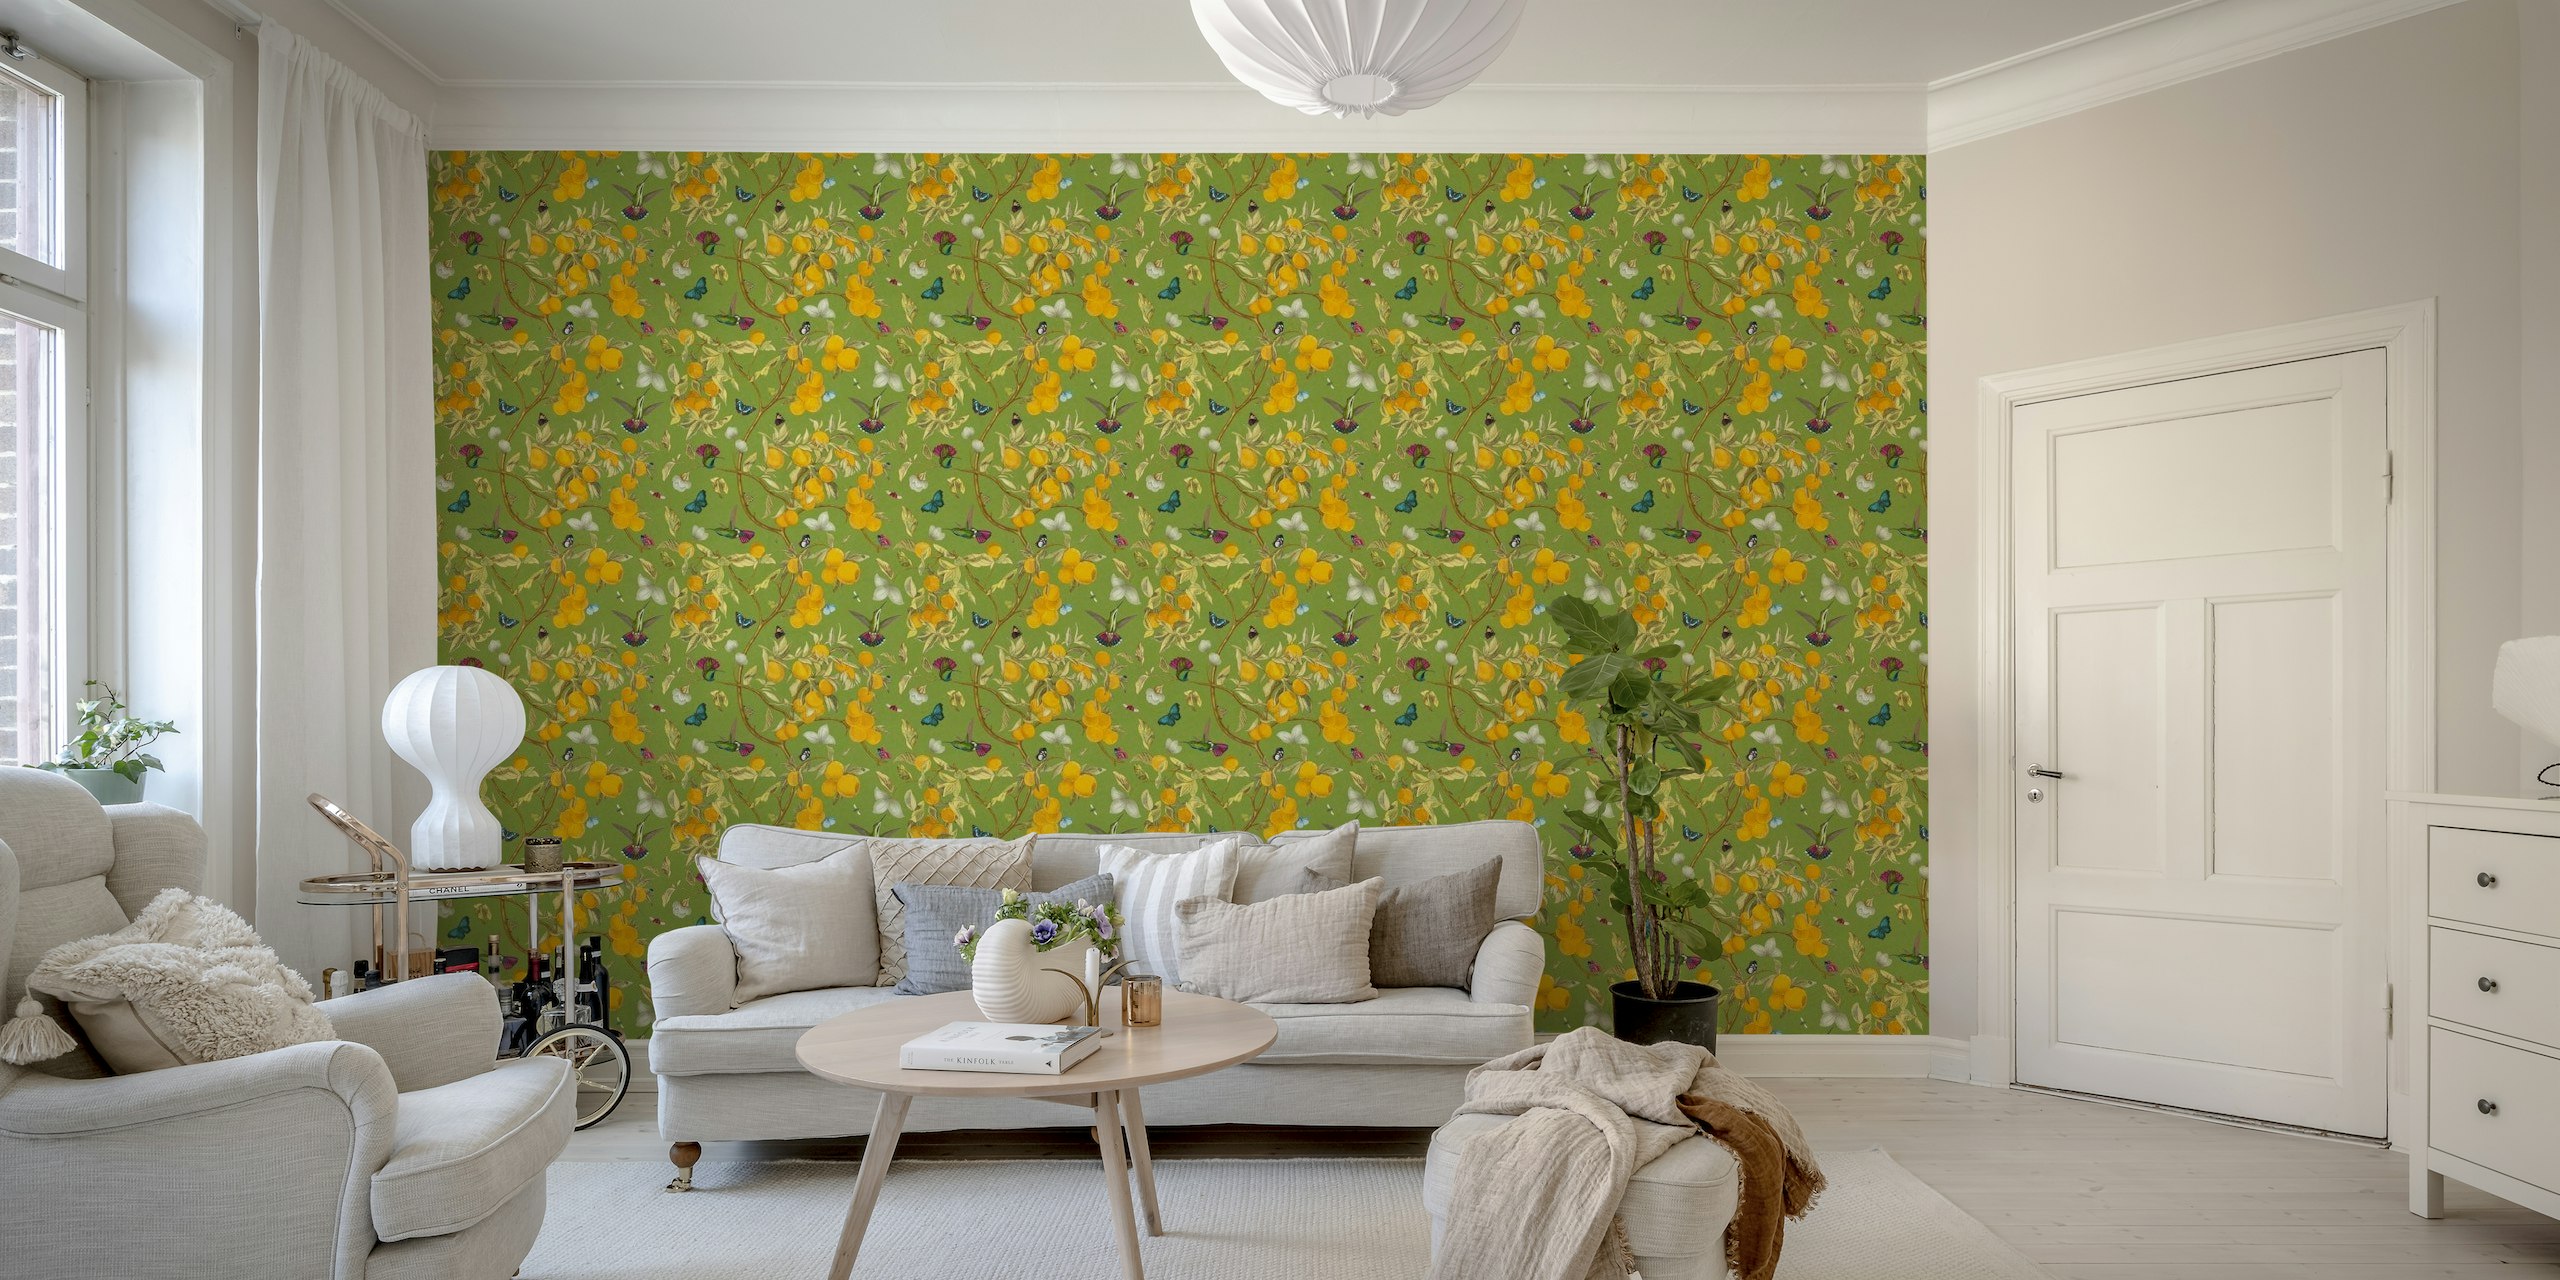 Kolibrier og citroner vægmaleri med insekter på en æblegrøn baggrund